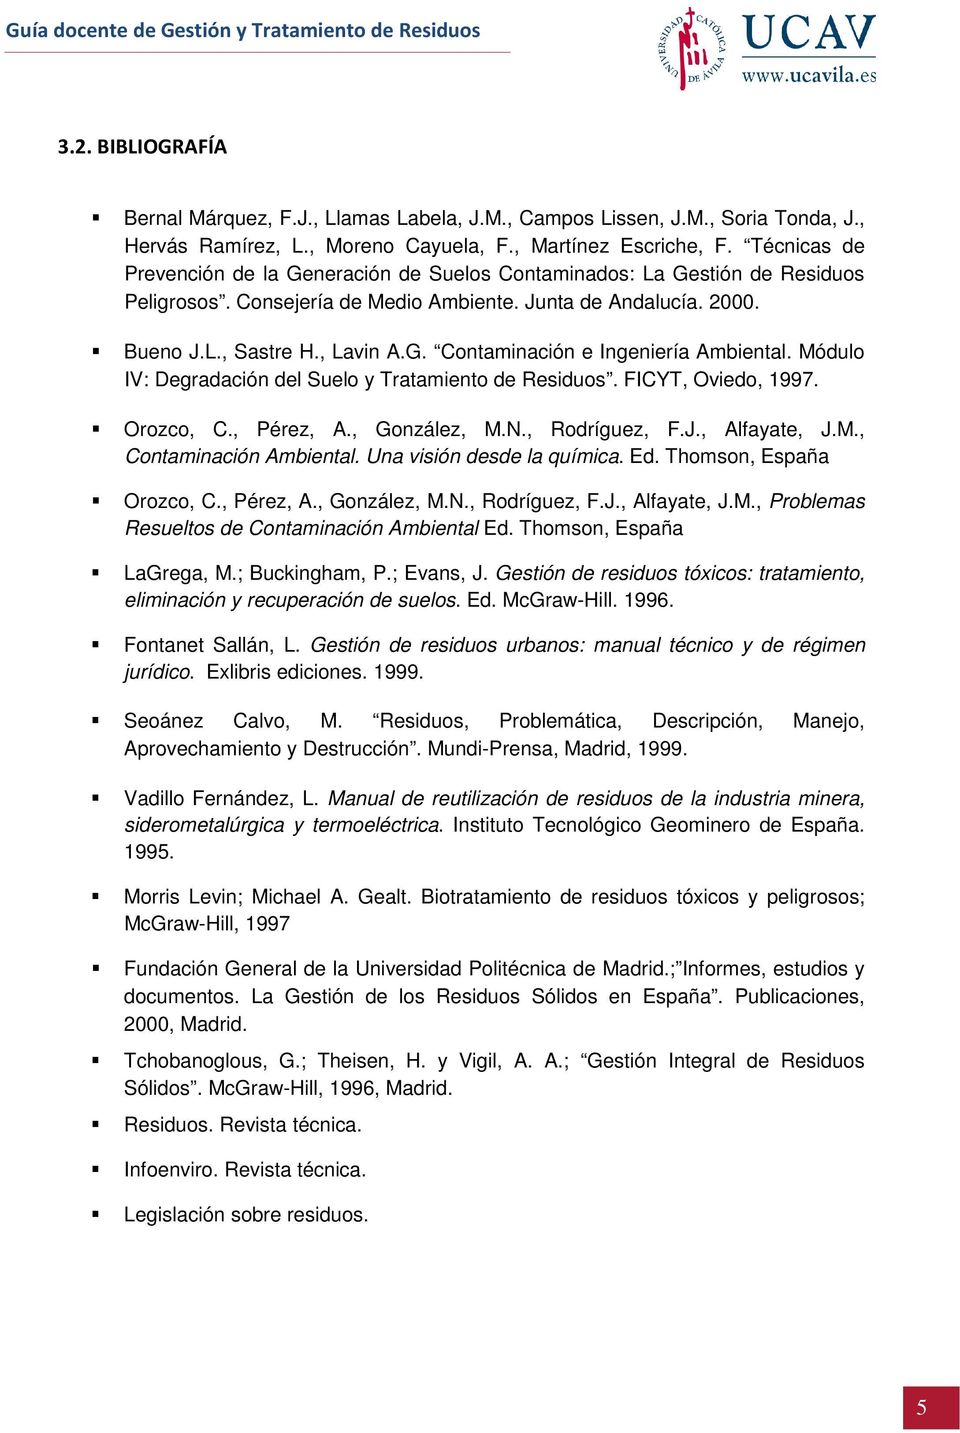 Módulo IV: Degradación del Suelo y Tratamiento de Residuos. FICYT, Oviedo, 1997. Orozco, C., Pérez, A., González, M.N., Rodríguez, F.J., Alfayate, J.M., Contaminación Ambiental.